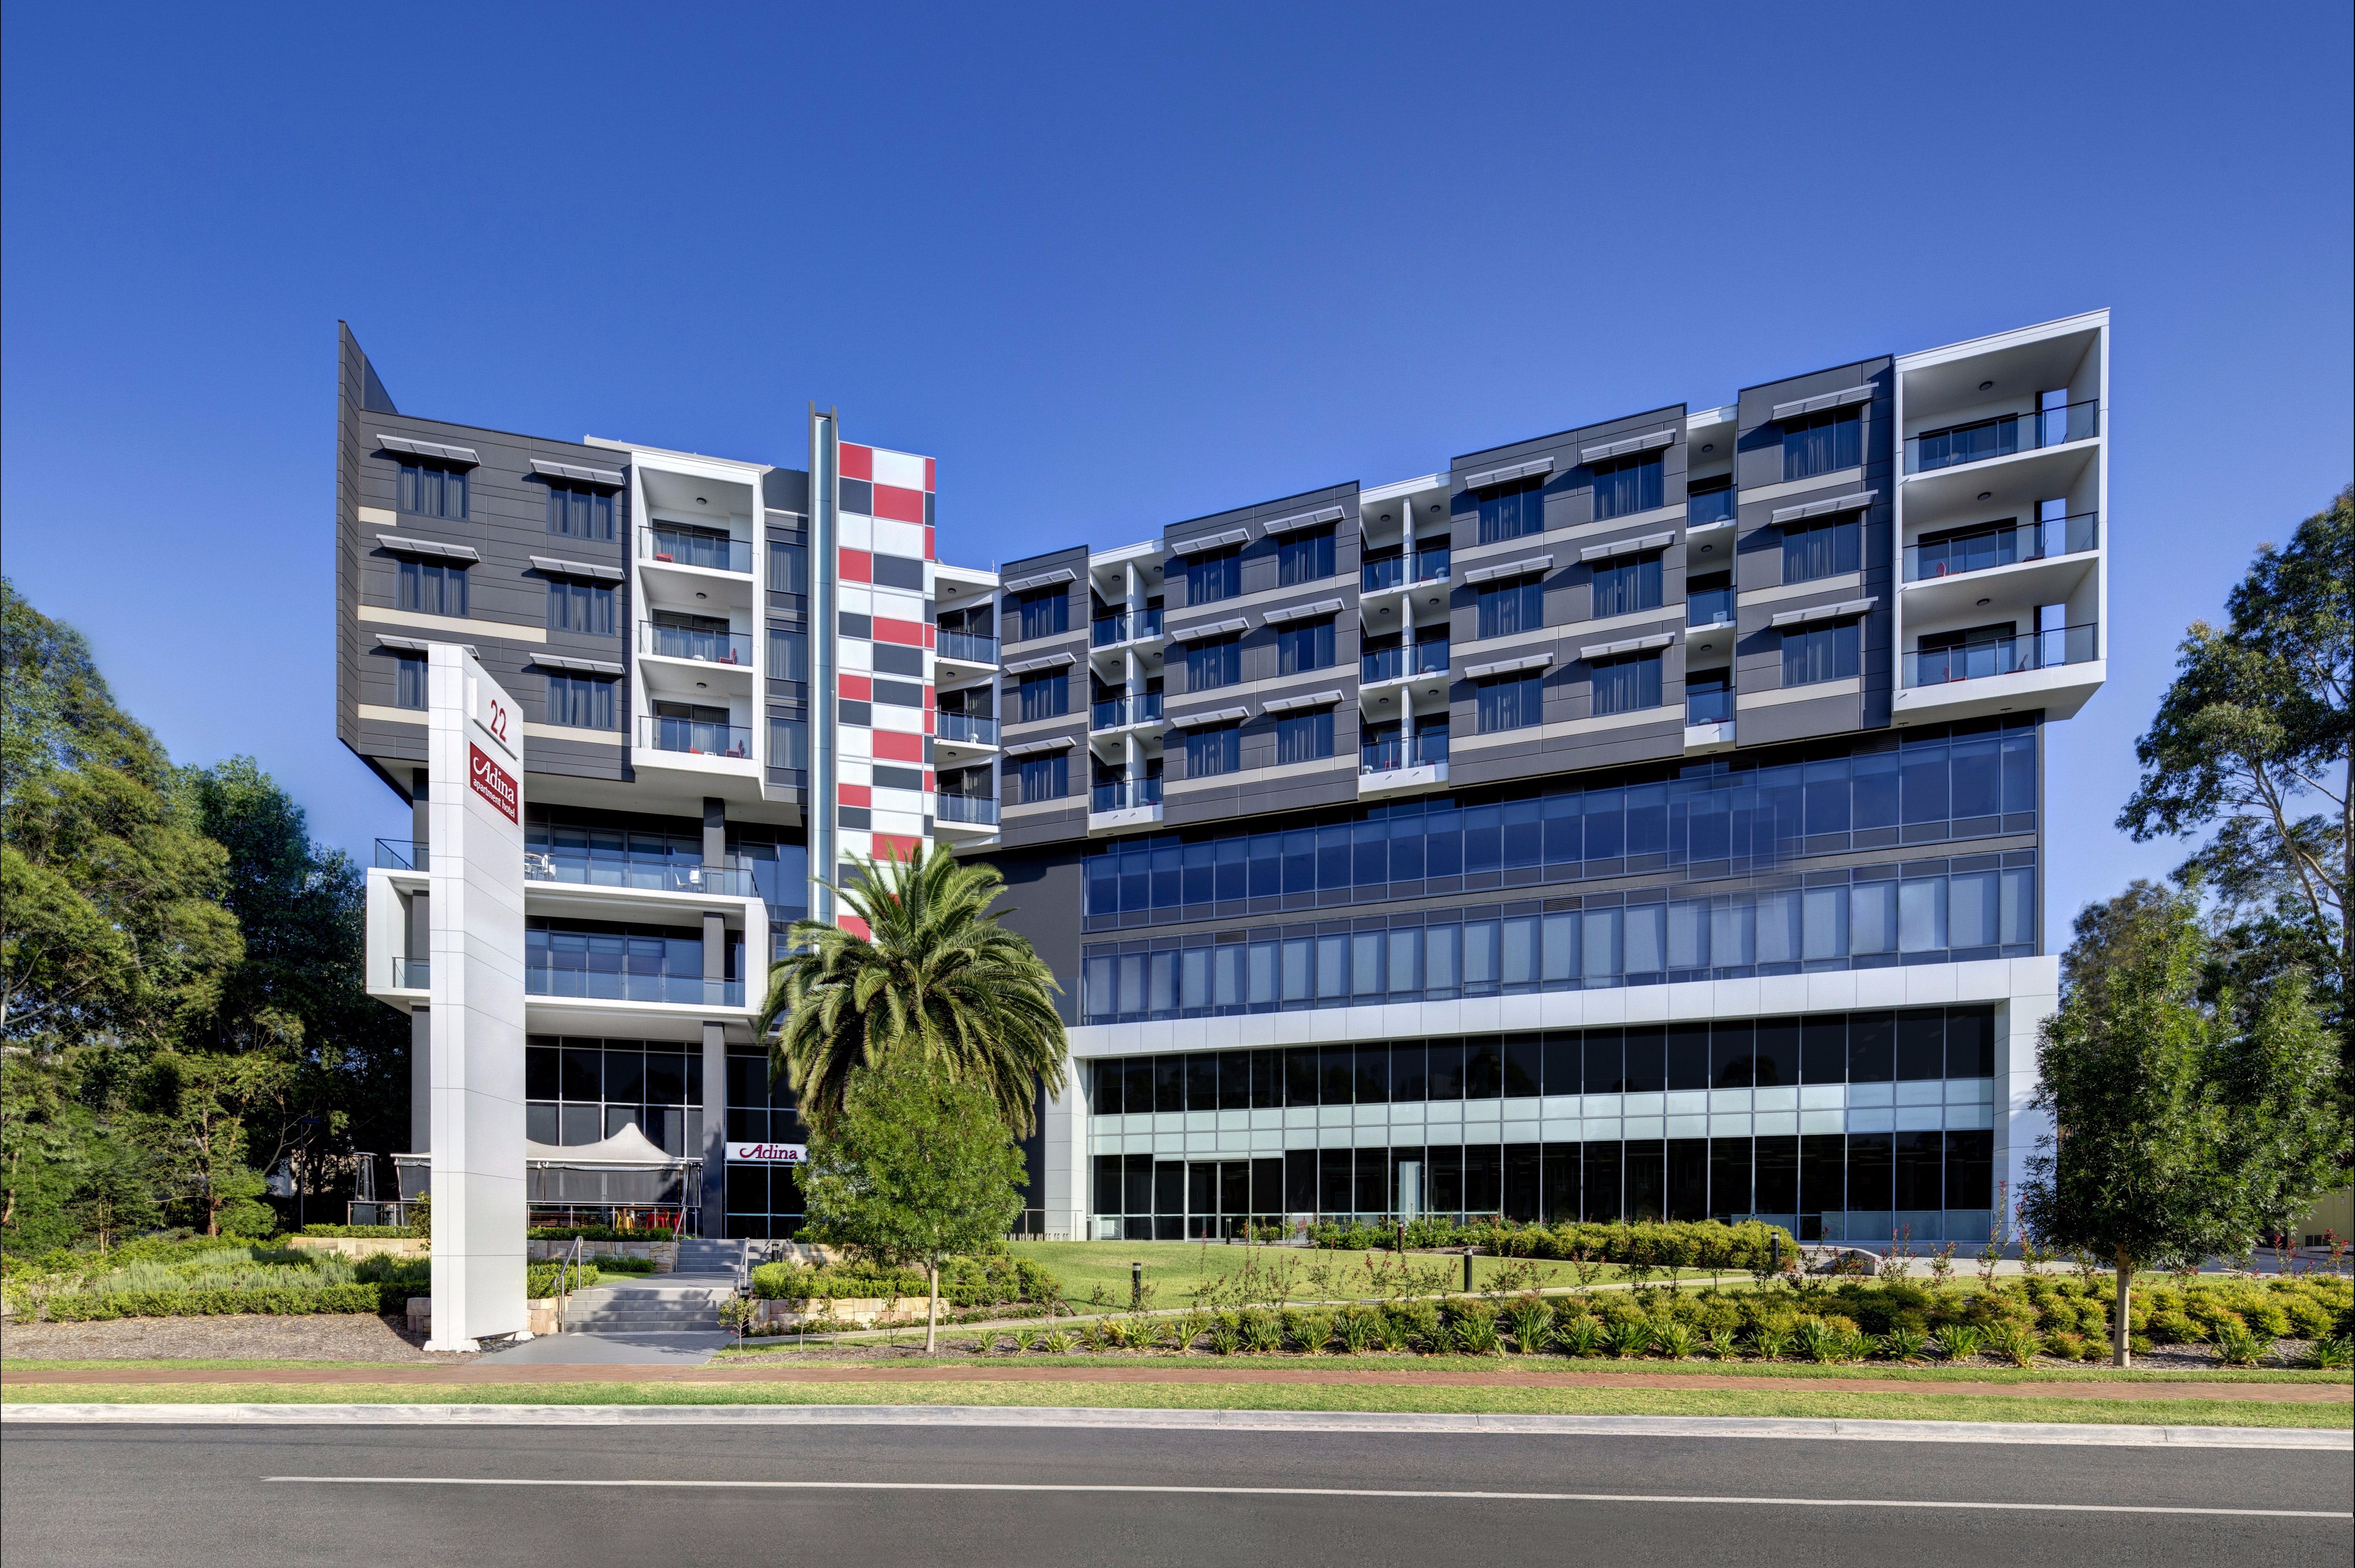 Adina Apartment Hotel Norwest Sydney - Accommodation Kalgoorlie